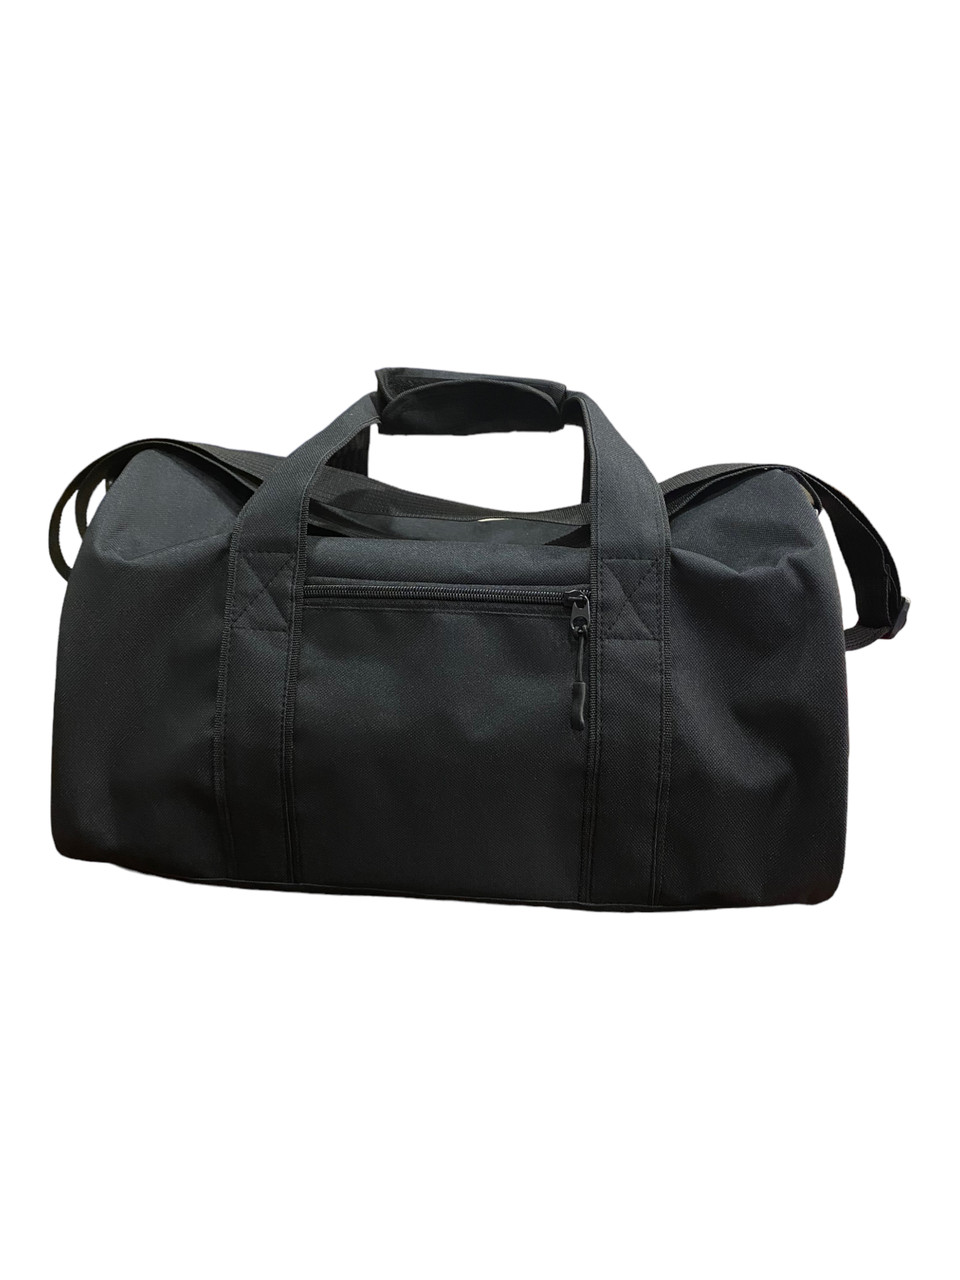 Спортивна сумка Sac VS Thermal Eco Bag чорного цвета, фото 1